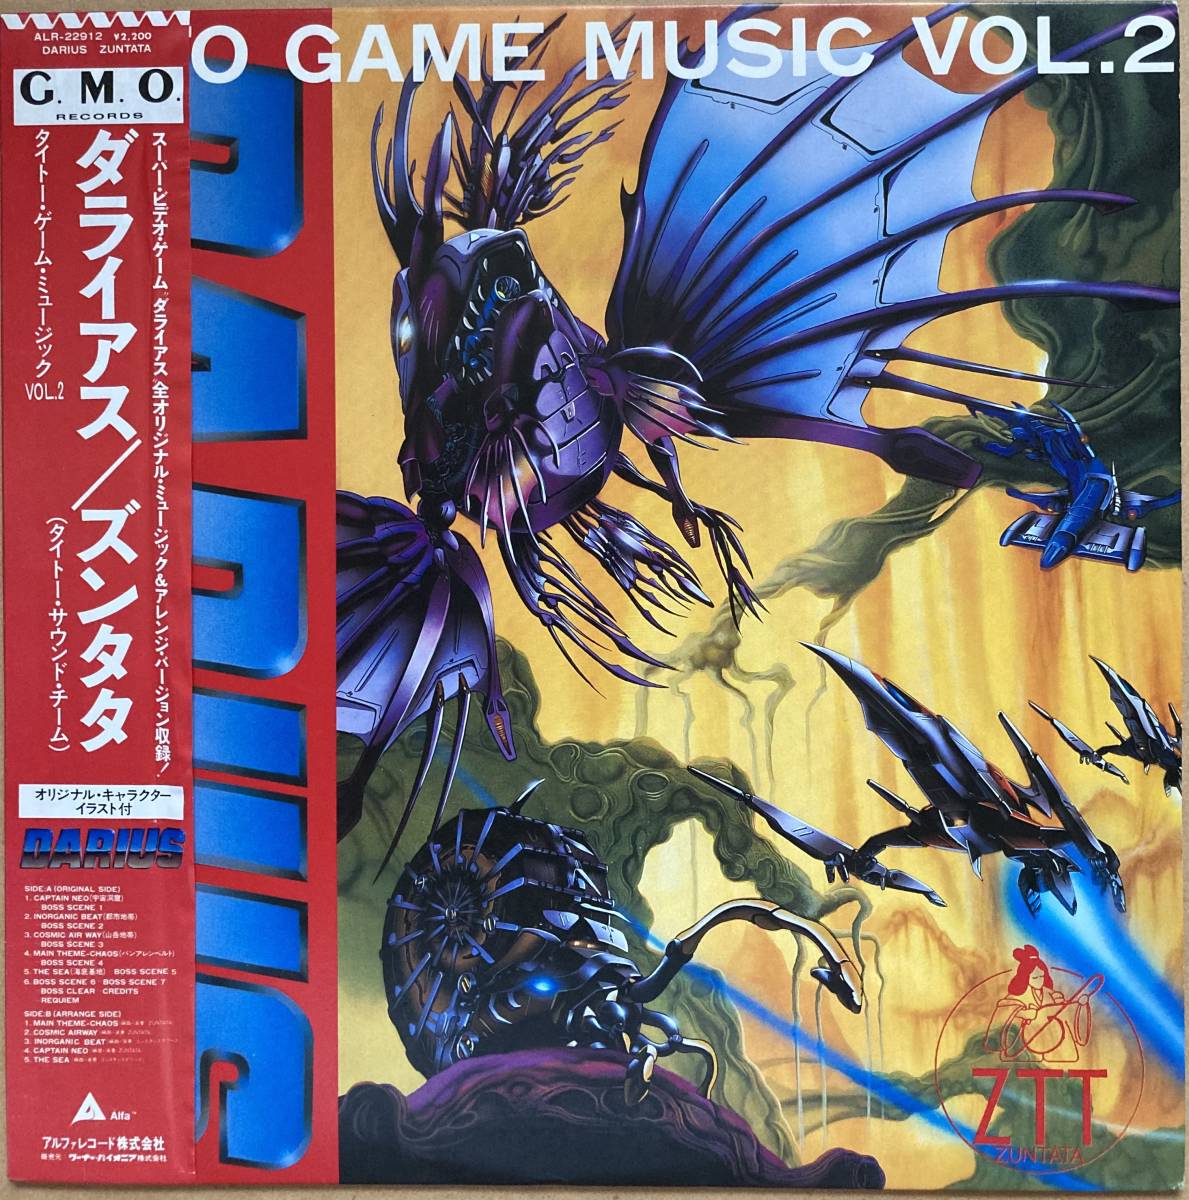 LP DARIUS ダライアス TAITO GAME MUSIC VOL.2 / ZUNTATA ズンタタ 帯付き ALR-22912 G.M.O._画像1